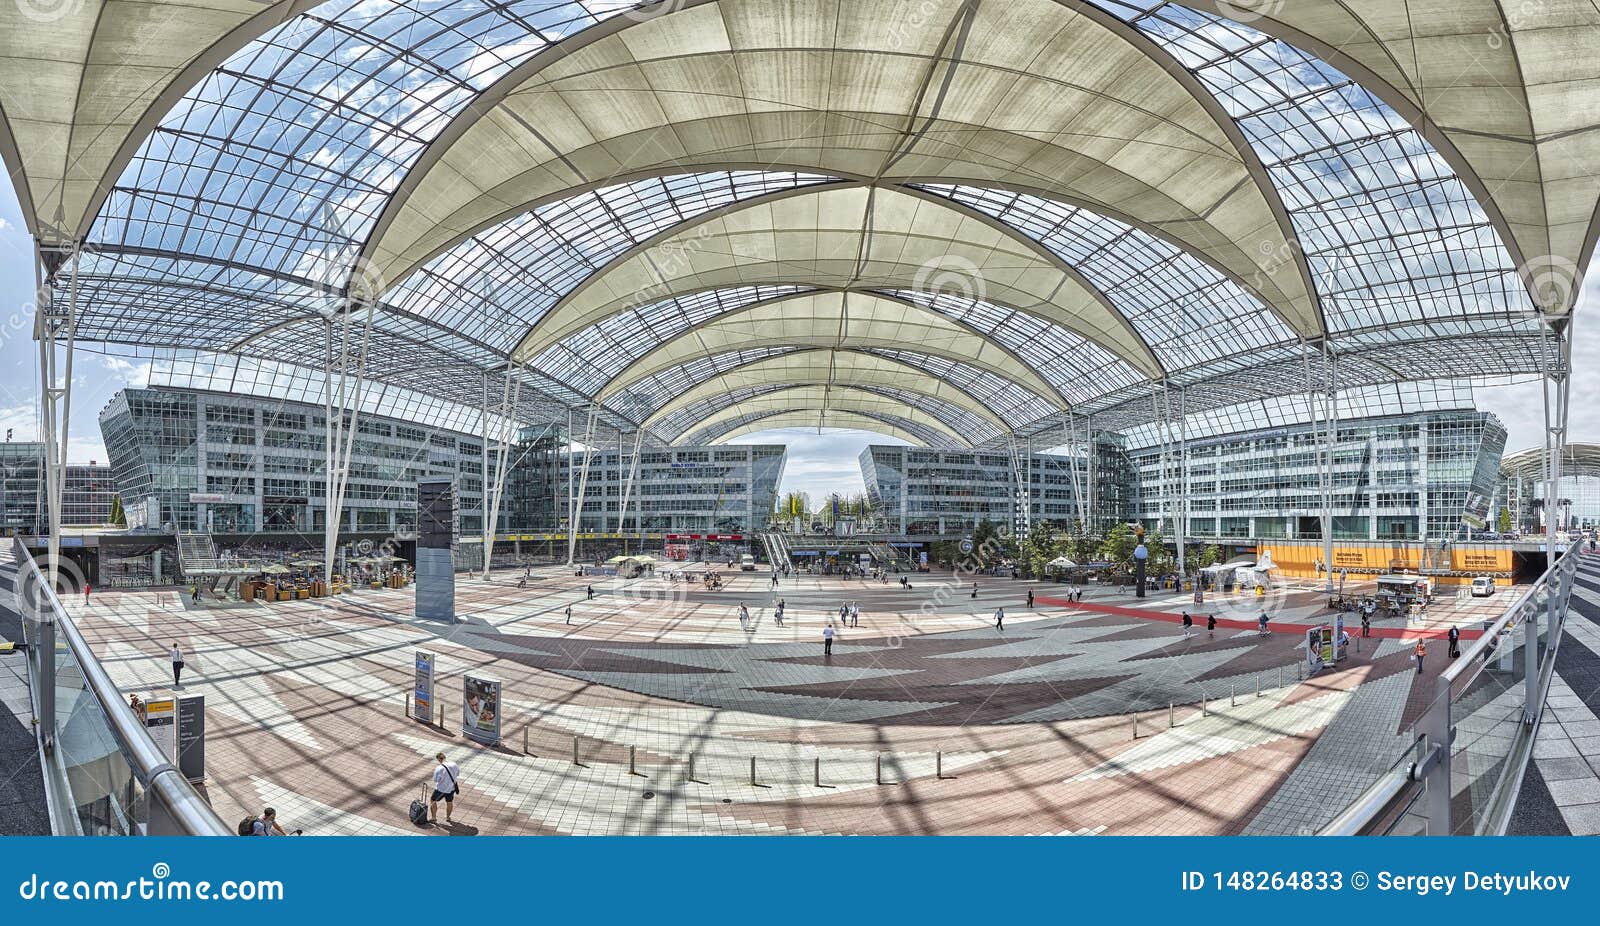 慕尼黑机场 图库摄影片. 图片 包括有 慕尼黑, 运输, 旅游业, 拱道, 旅行, 乘客, 国际, 德国 - 90352857